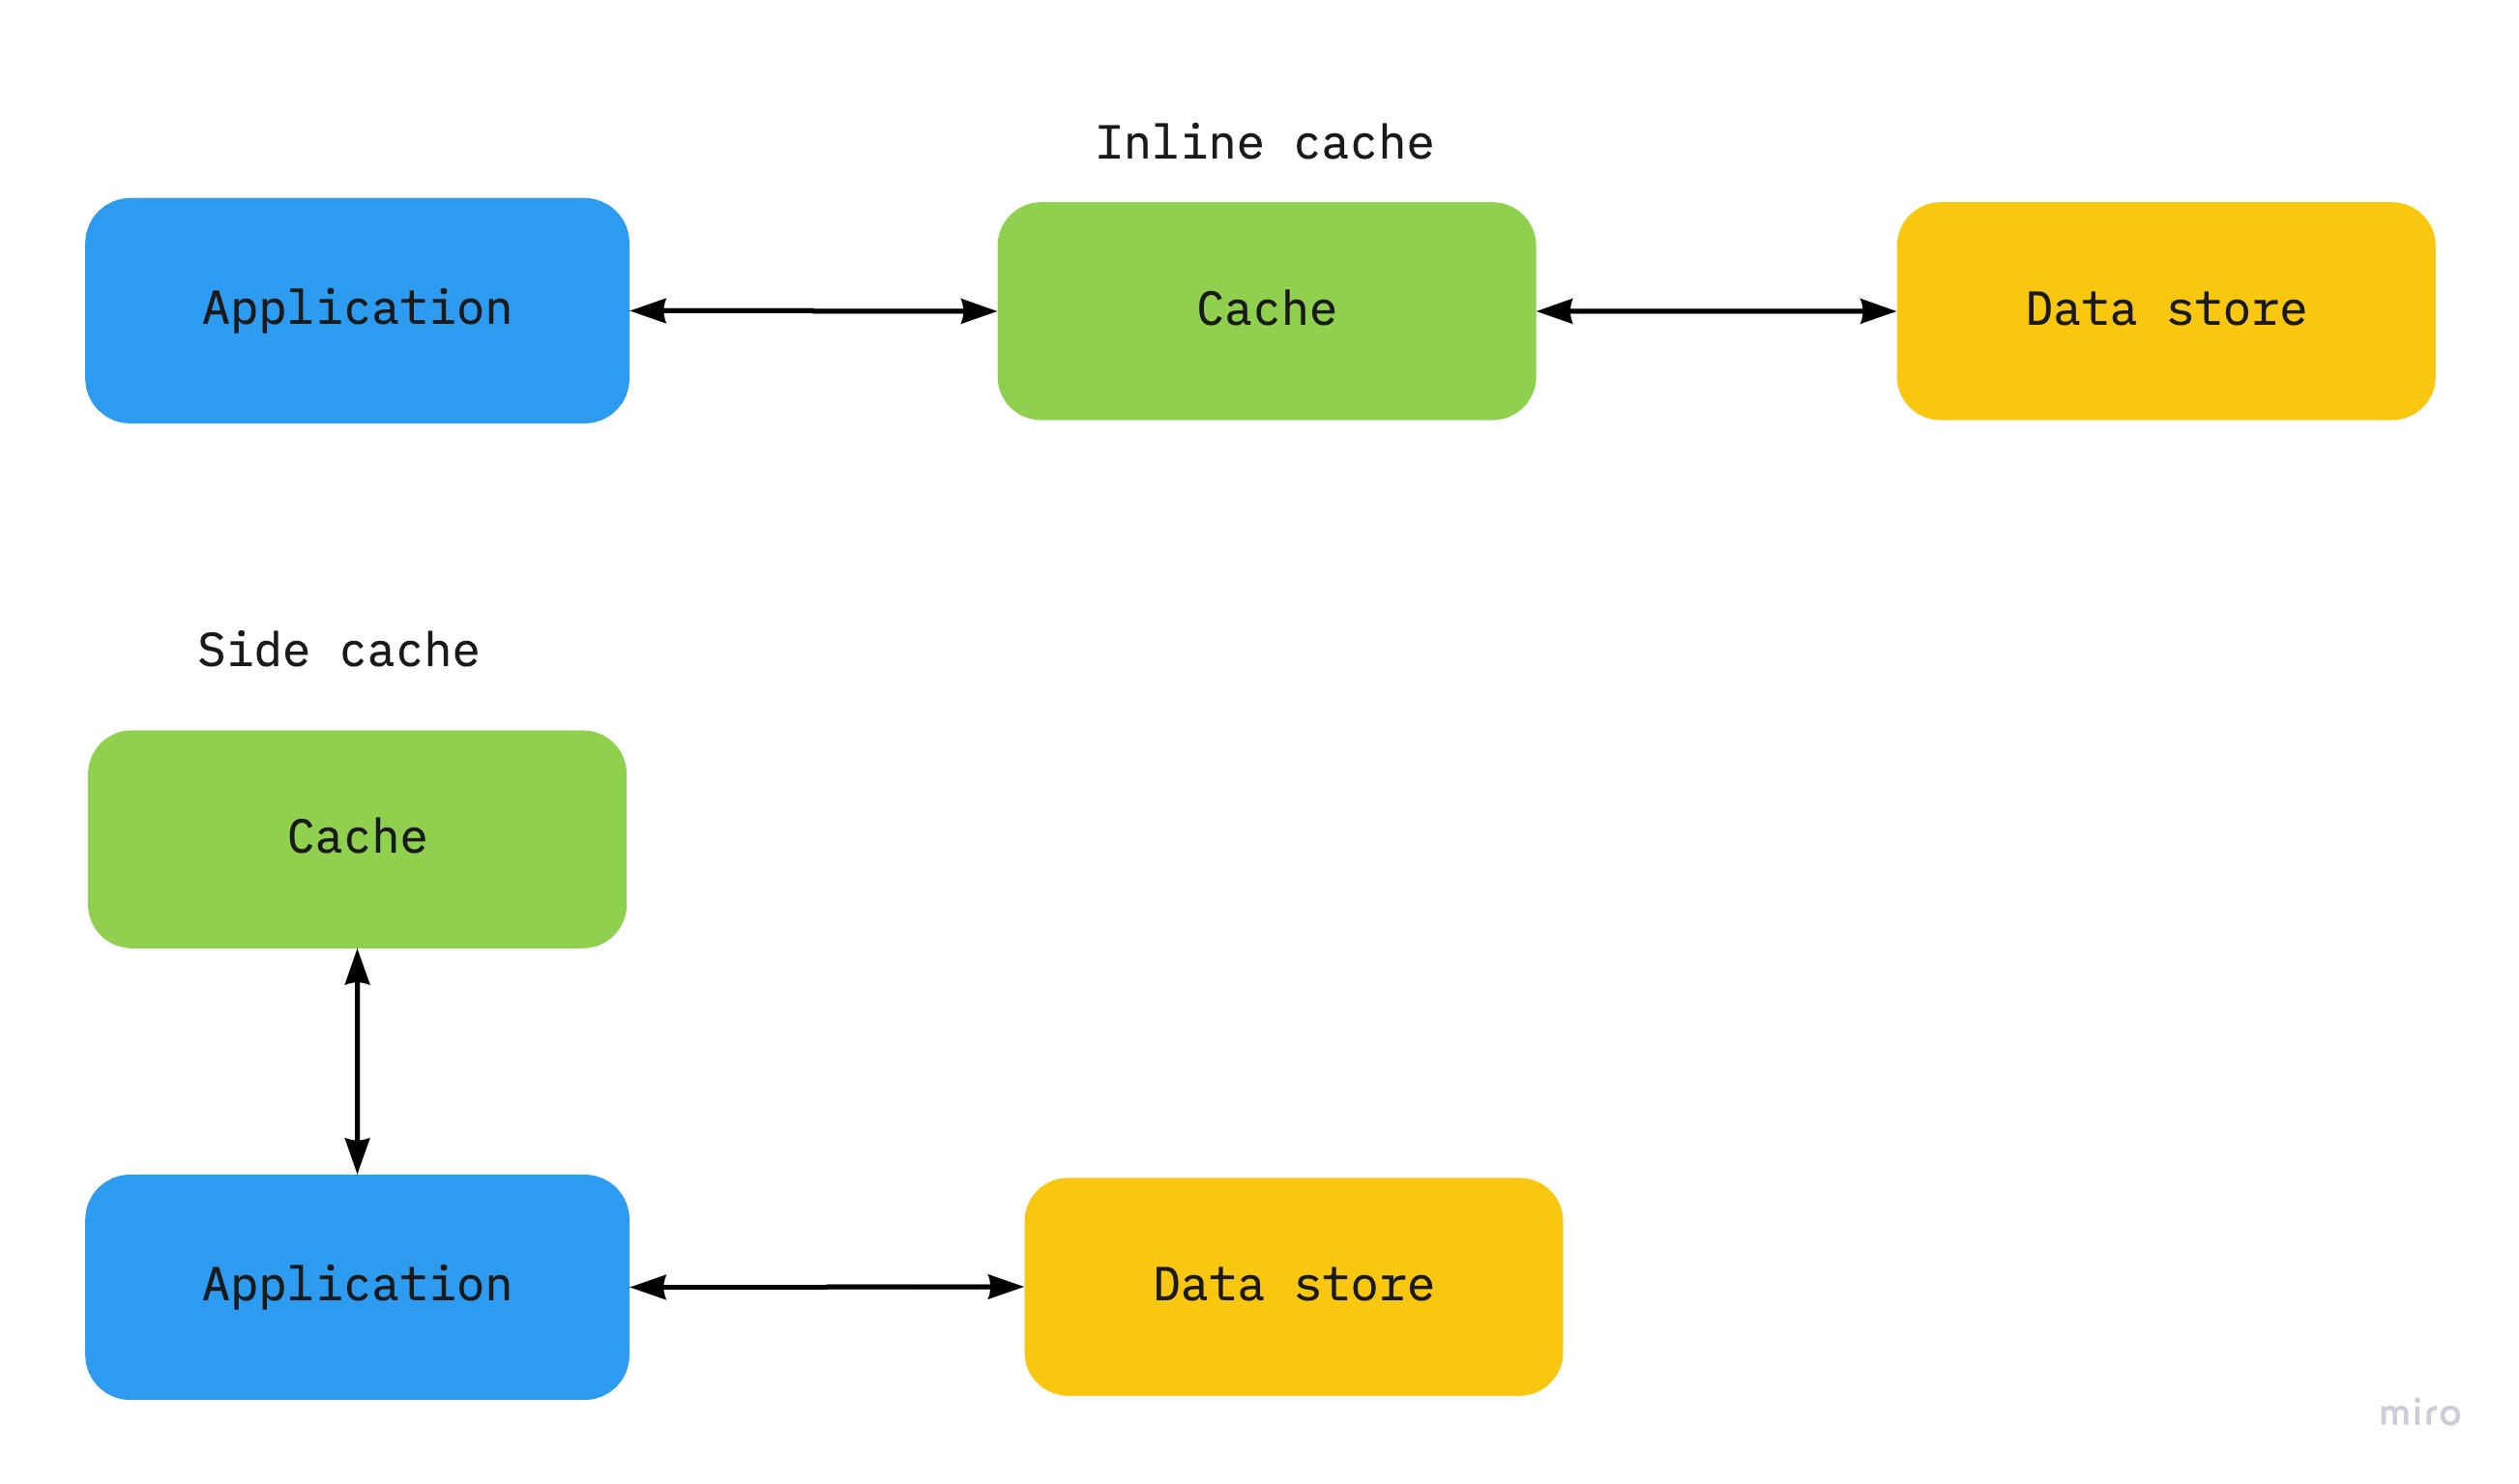 private cache program